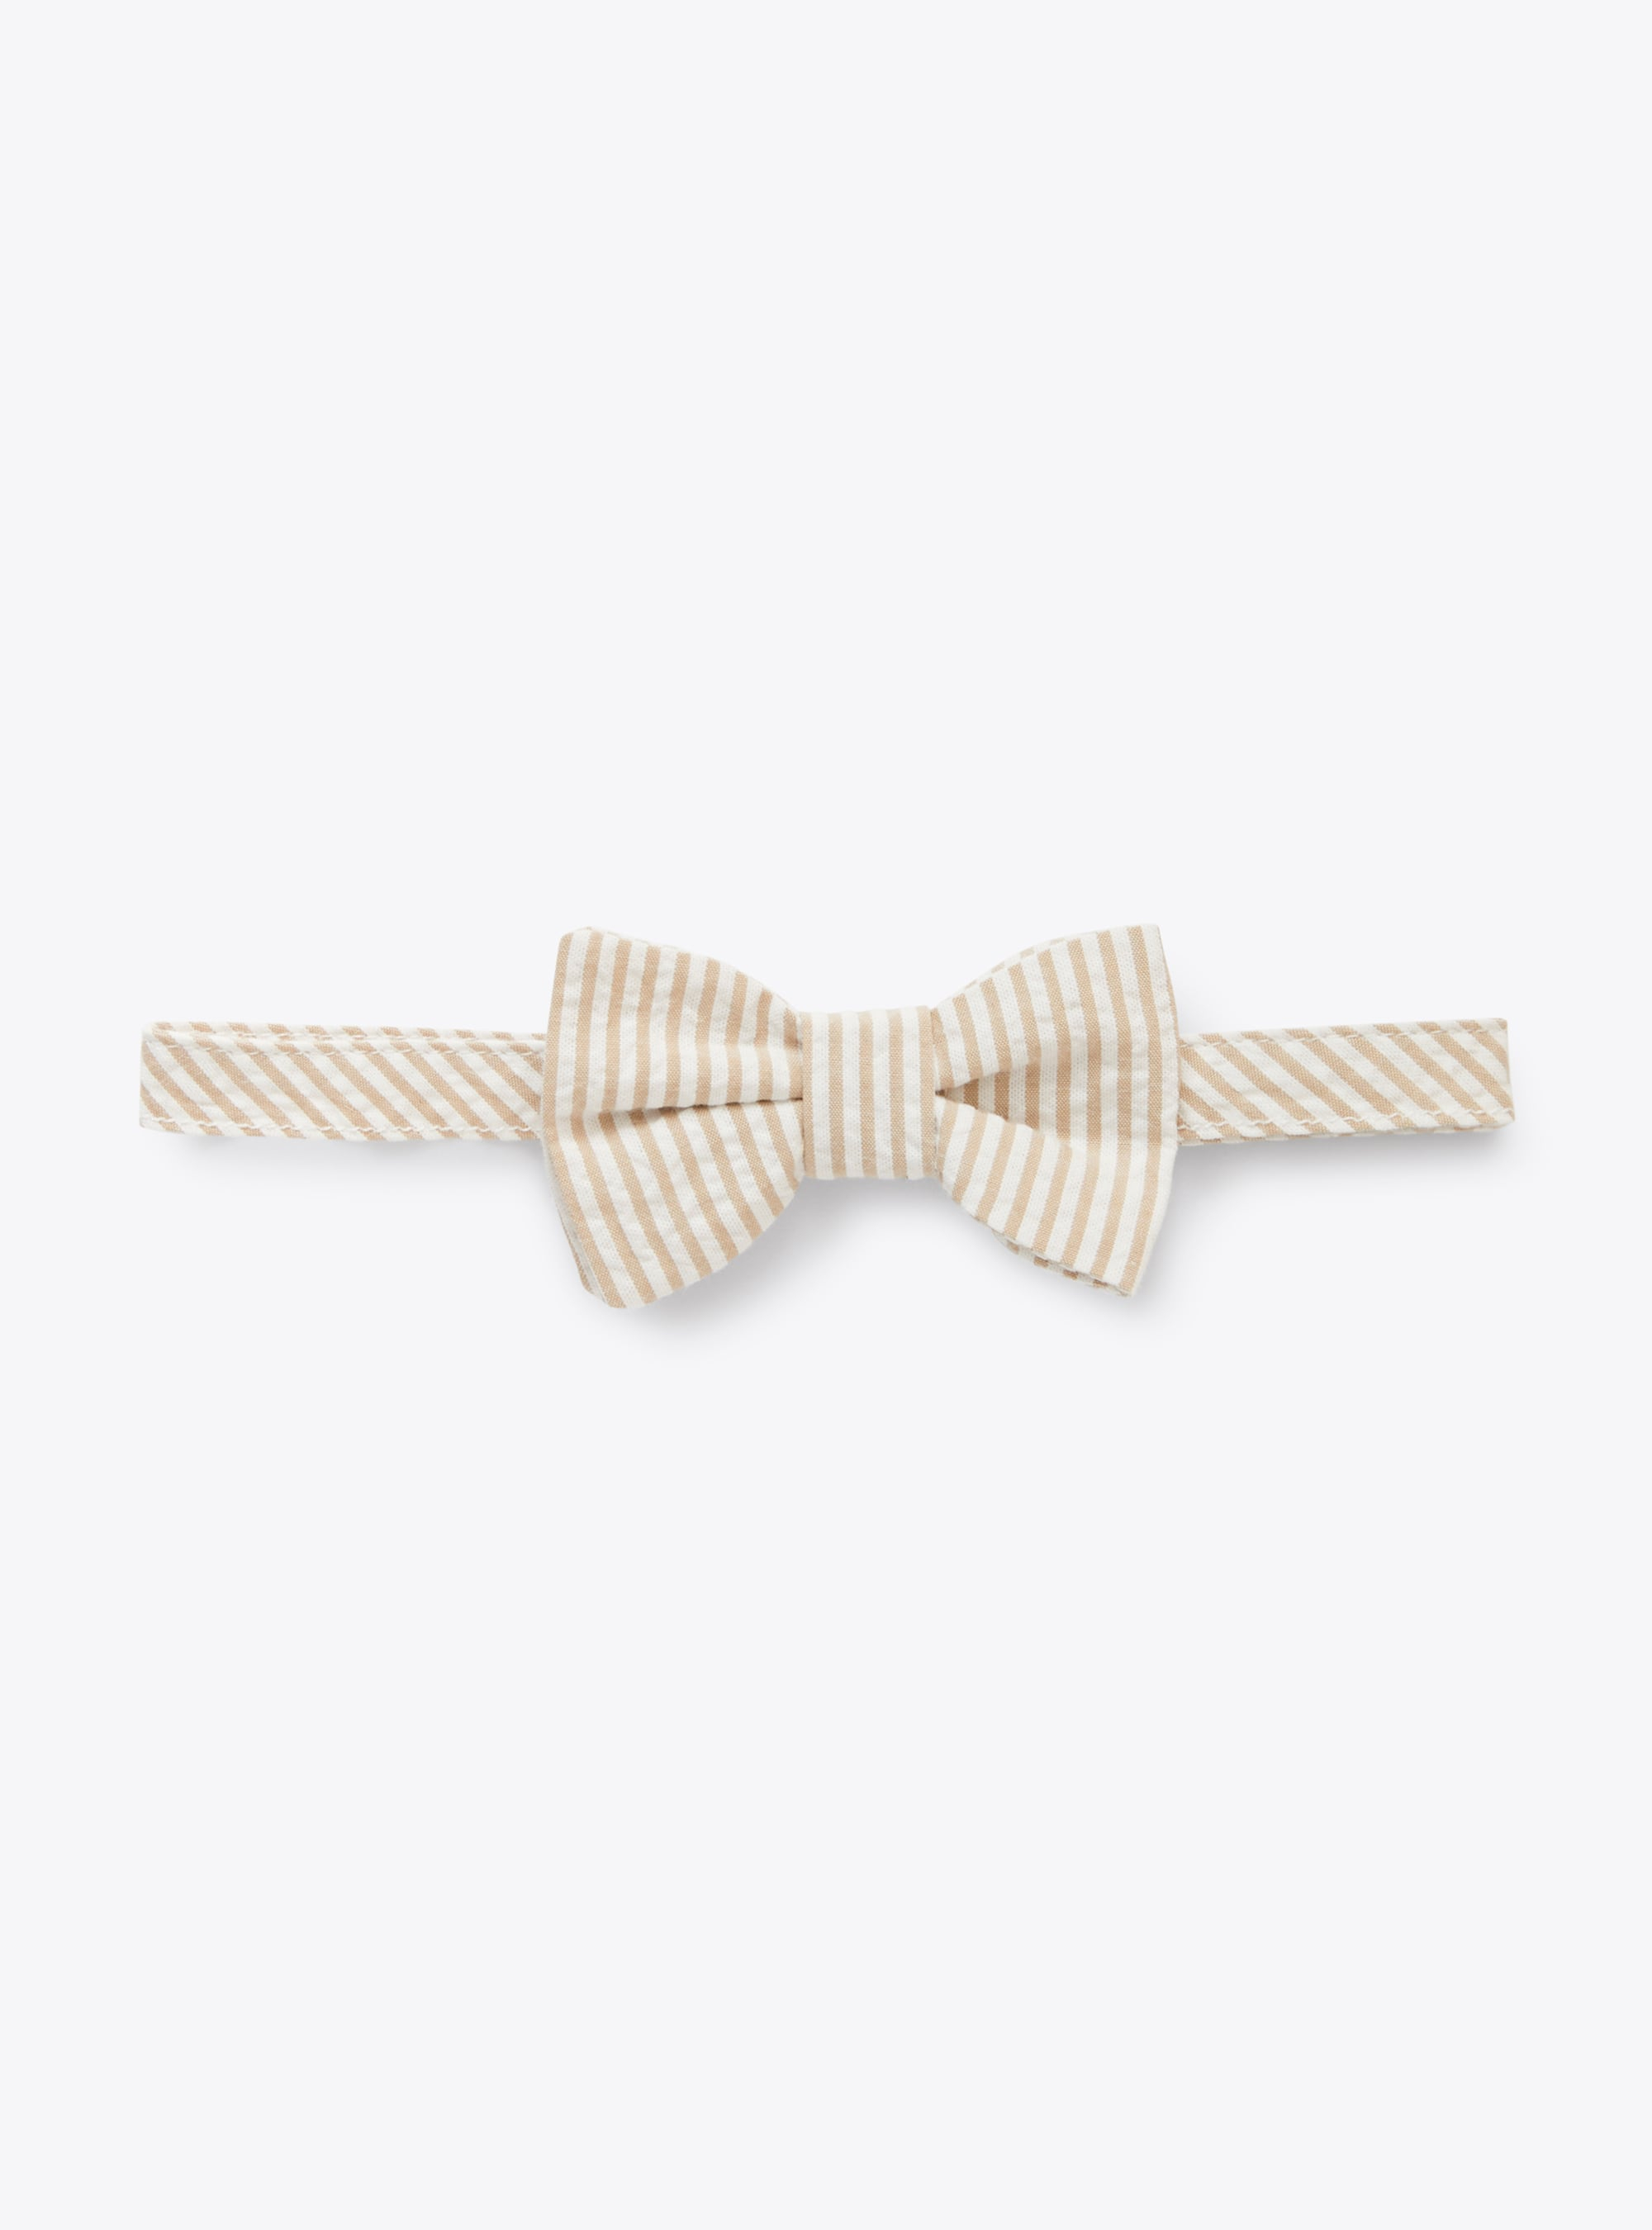 Bow tie in beige-&-white striped seersucker - Accessories - Il Gufo